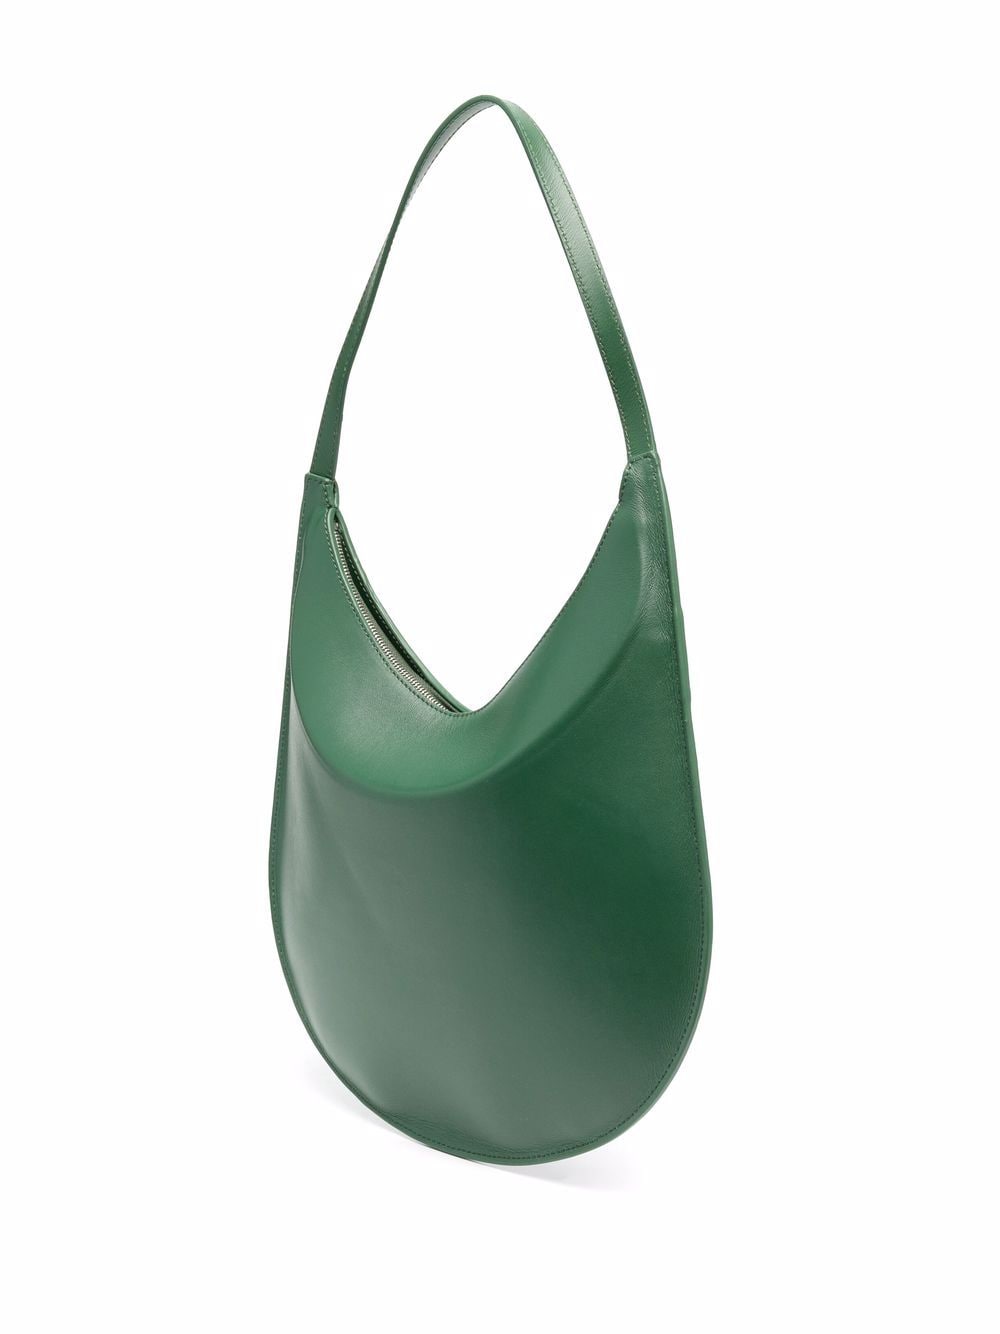 Buy AESTHER EKME Flat Hobo Shoulder Bag - Green At 30% Off